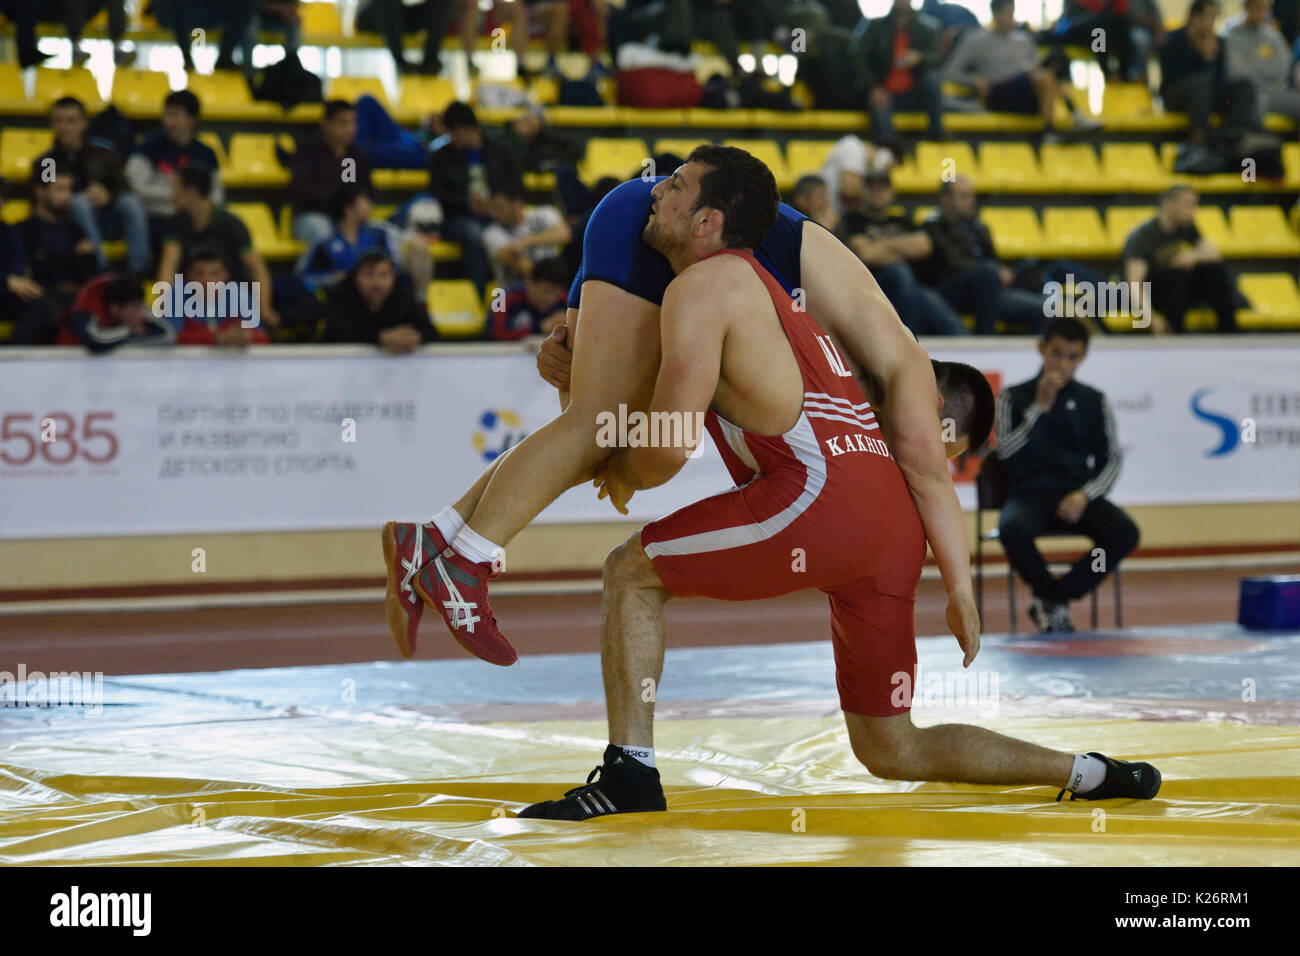 St. Petersburg, Russland - 6. Mai 2015: Aslan Kakhidze von Kasachstan gegen unbekannte Athleten bei internationalen Freestyle wrestling Turnier Vi. Stockfoto